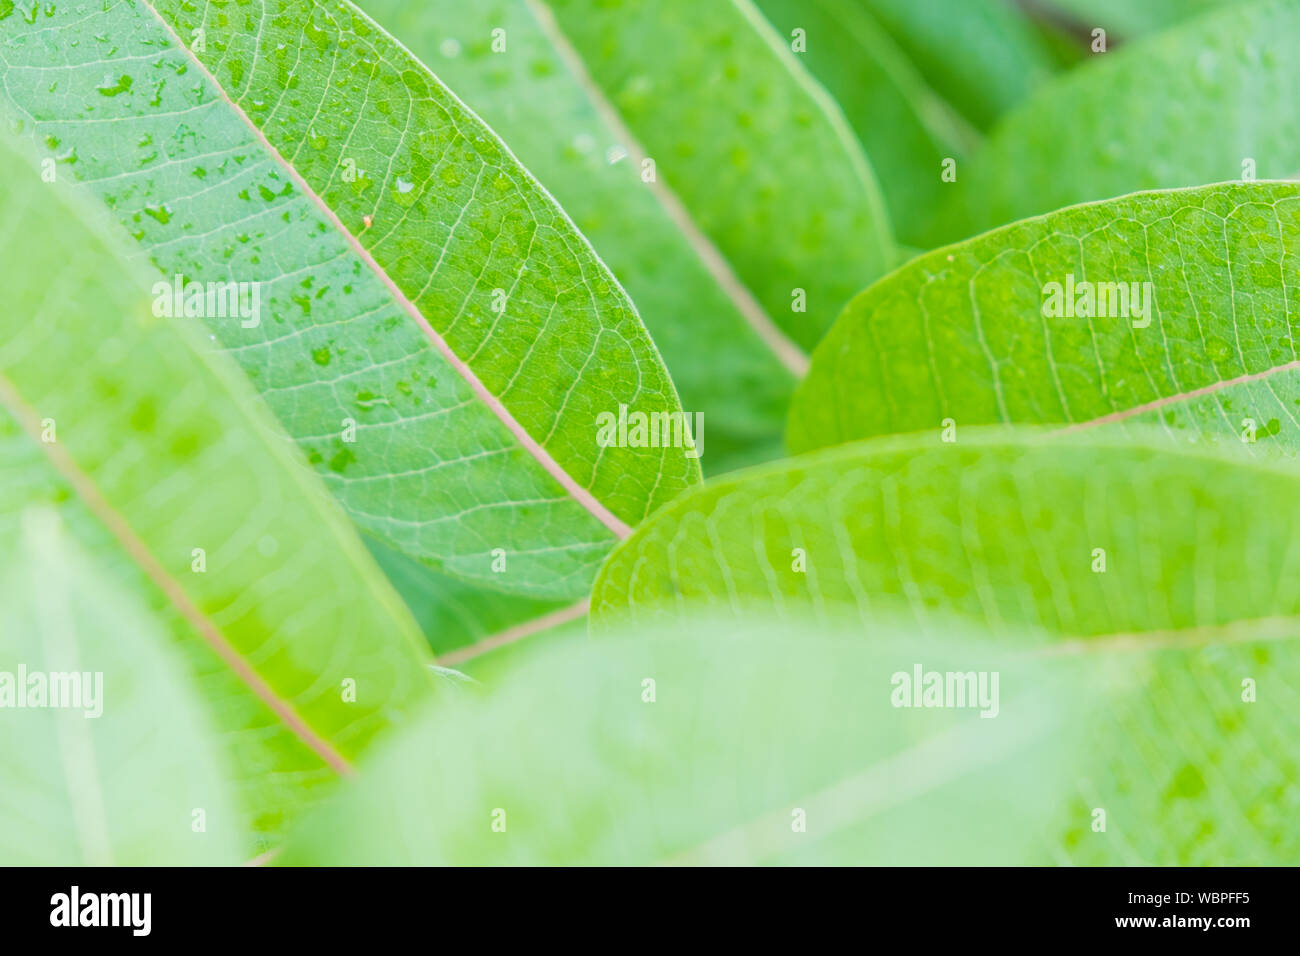 Grüne Blätter in Tropfen Tau, selektive konzentrieren. Lebendige grünen Farben der Pflanzen, frische, reine Natur Konzept Stockfoto